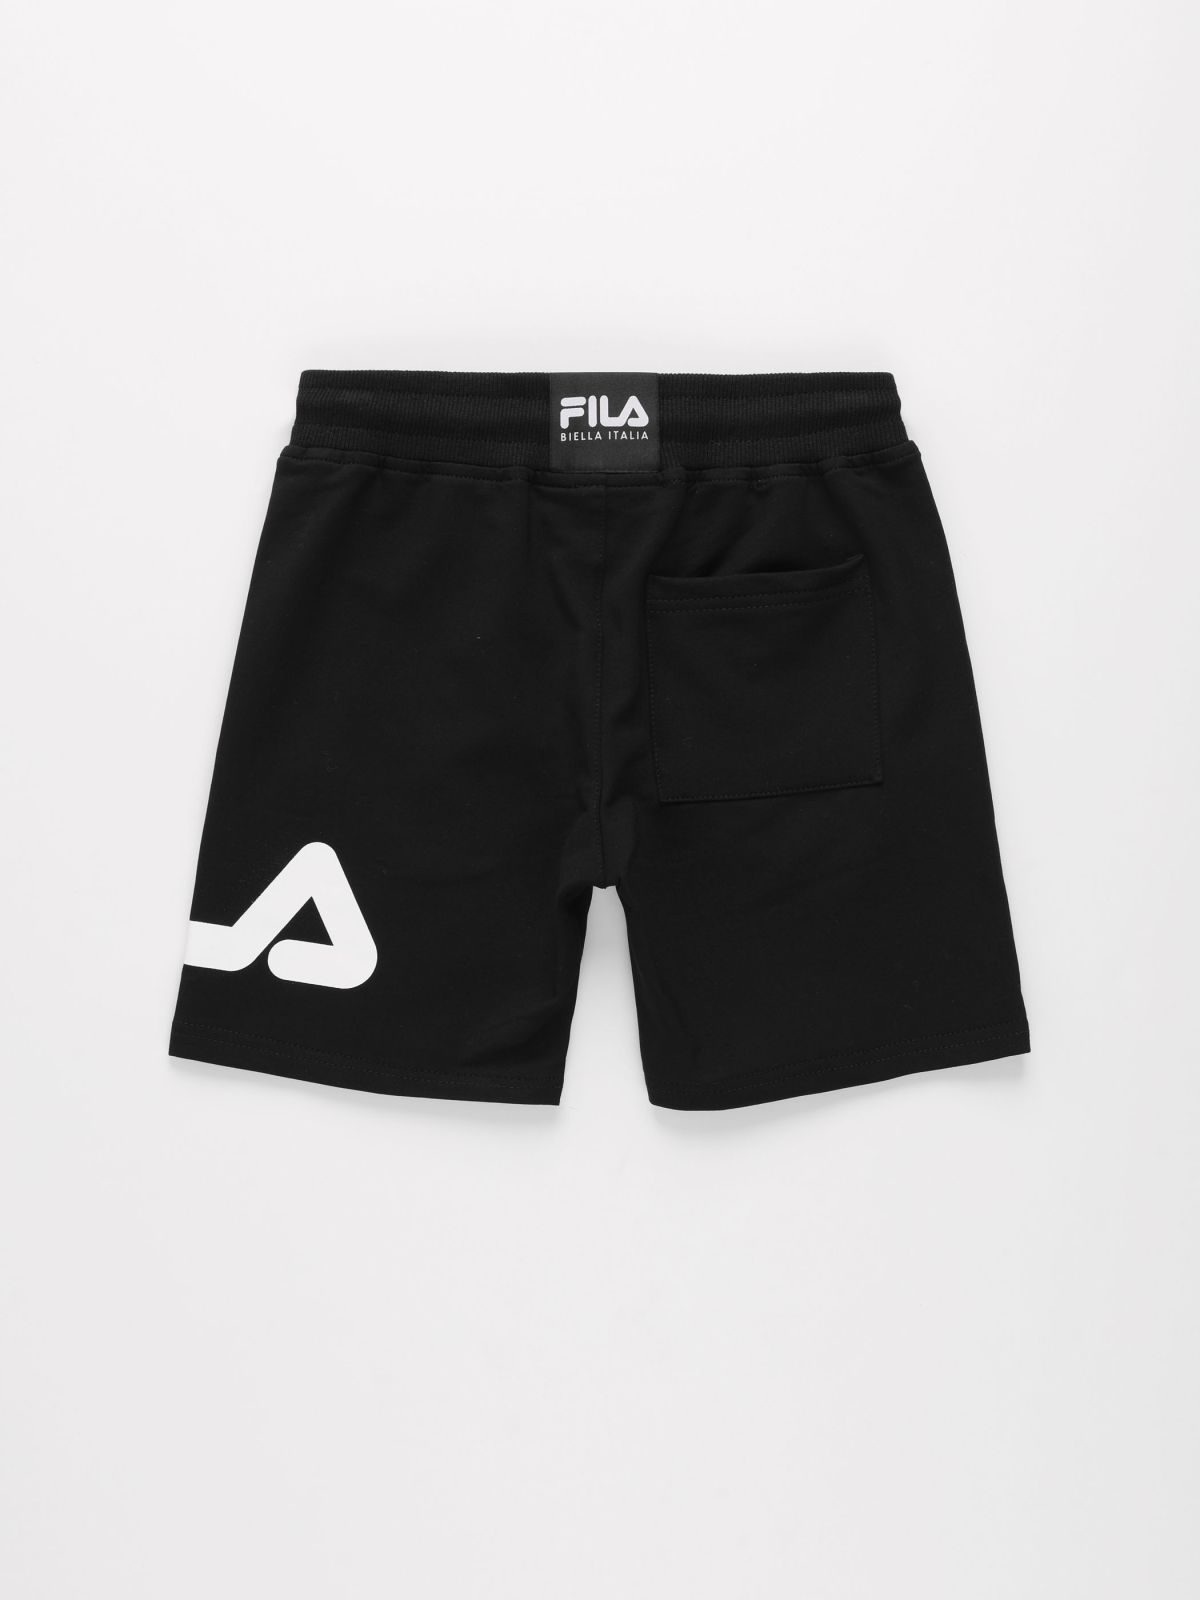  מכנסי ברמודה קצרים עם הדפס לוגו / בנים של FILA